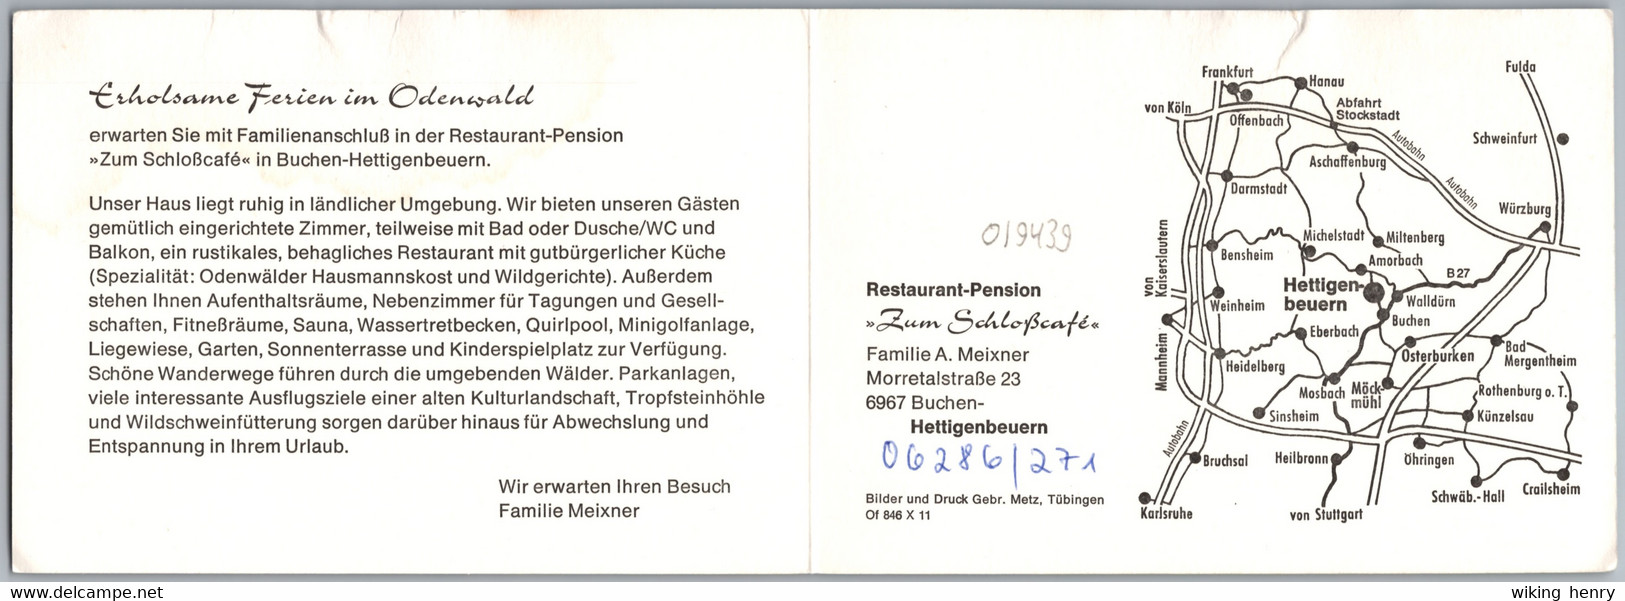 Buchen Hettigenbeuern Im Odenwald - Restaurant Pension Zum Schloßcafé 1   Doppelwerbekarte - Buchen